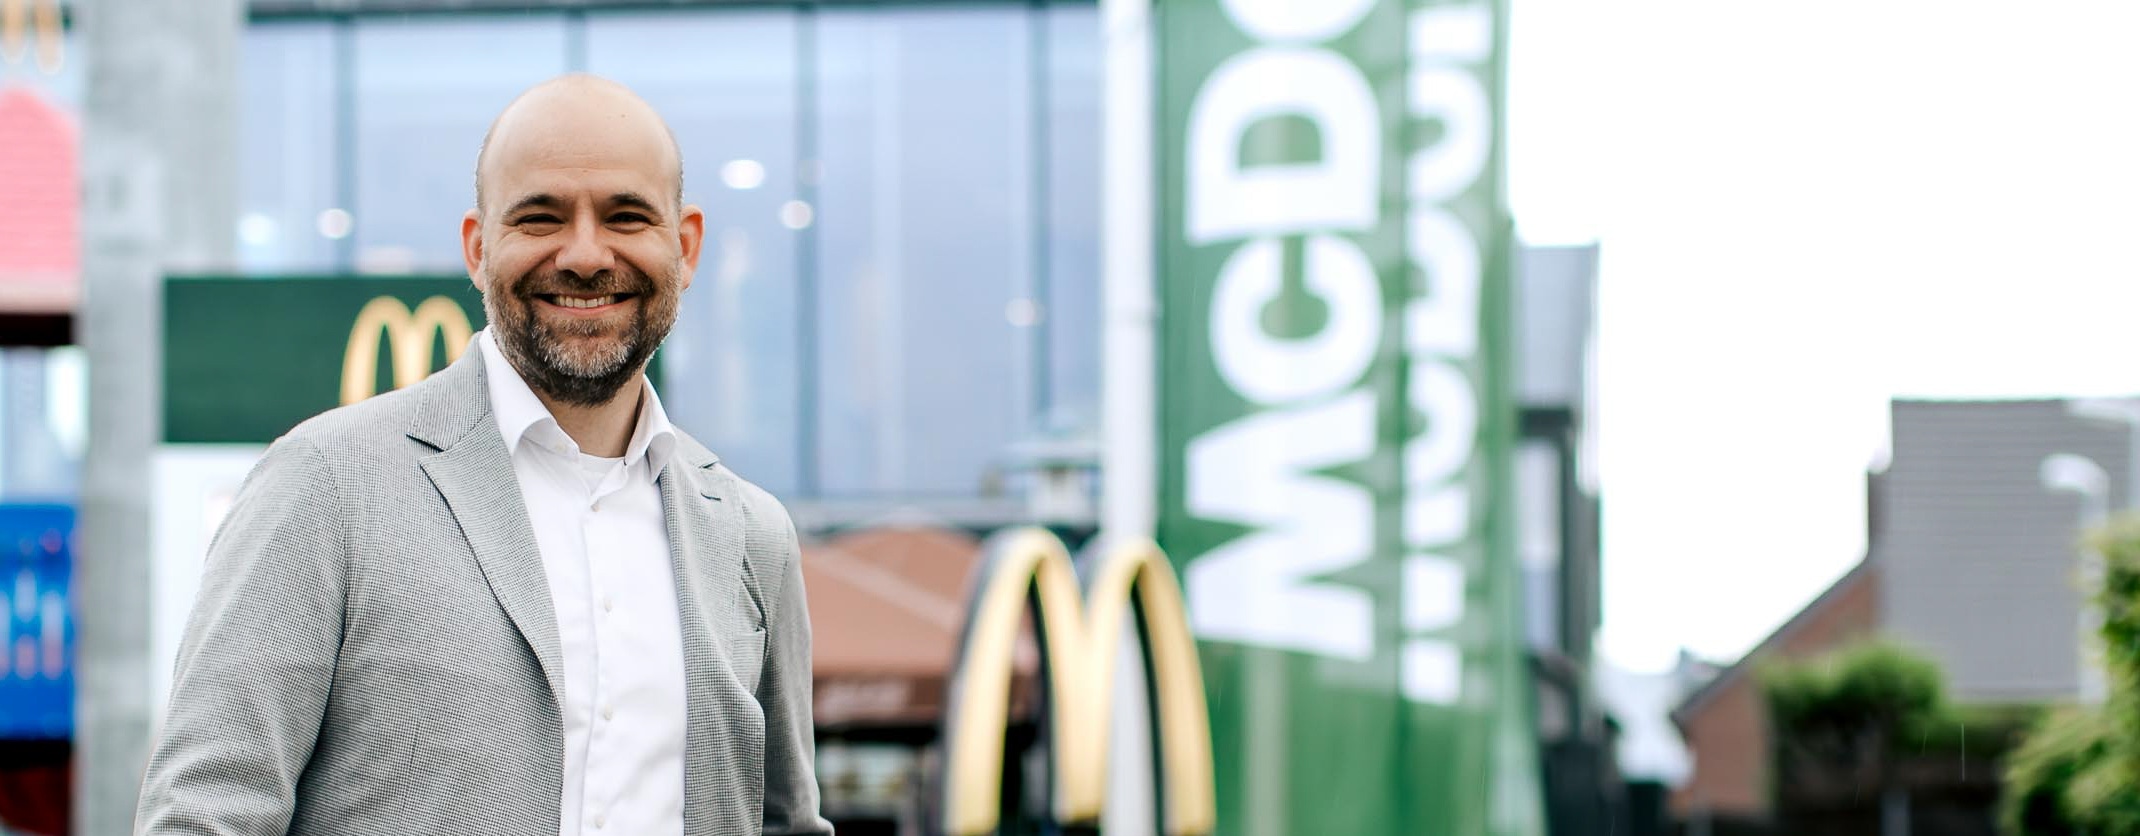 Mann lächelt in die Kamera. Er trägt eine graue Jacke und steht vor einem McDonald's Restaurant.